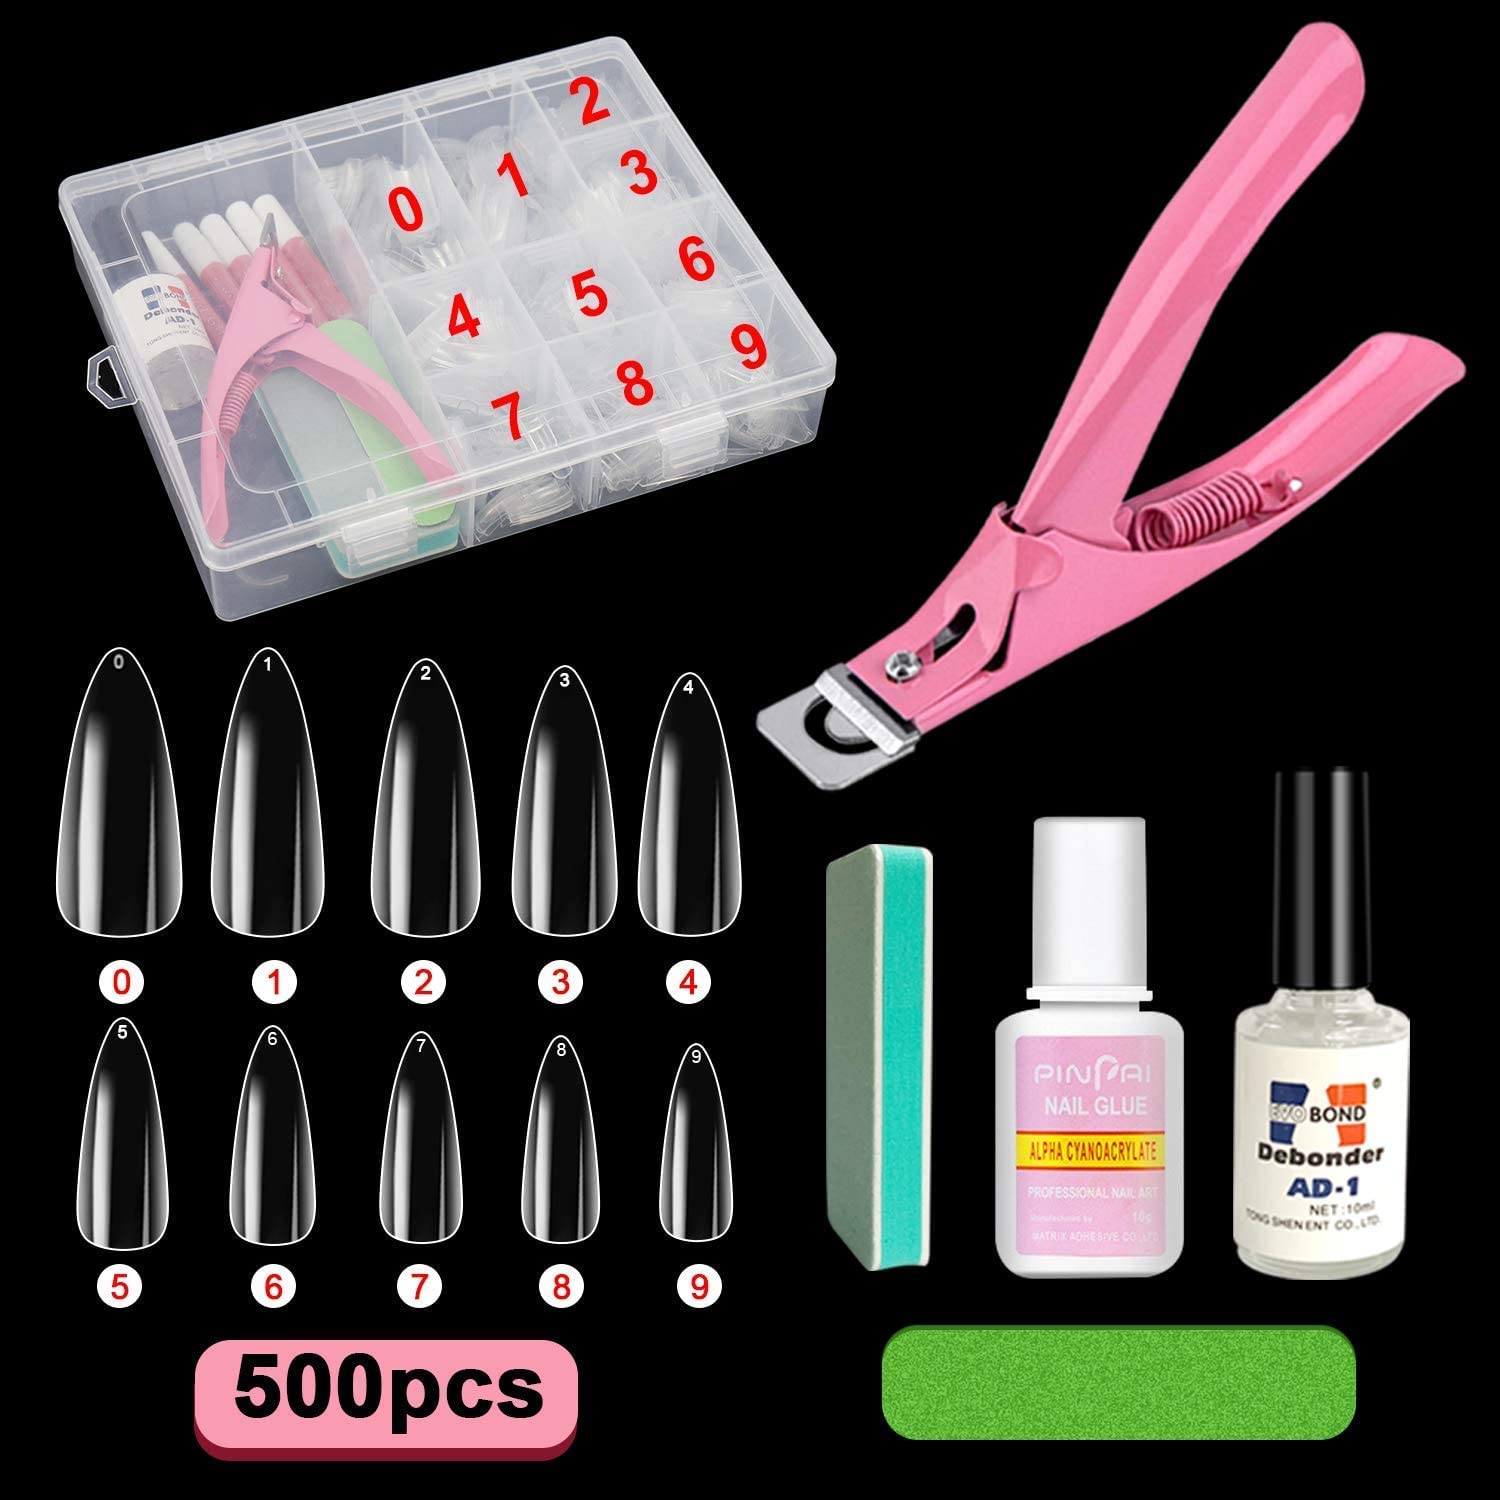 Acrylic False Nail Tips Kit, Screpreti 500 PCS Natural Full Cover Clear  Fake Nails Tips with